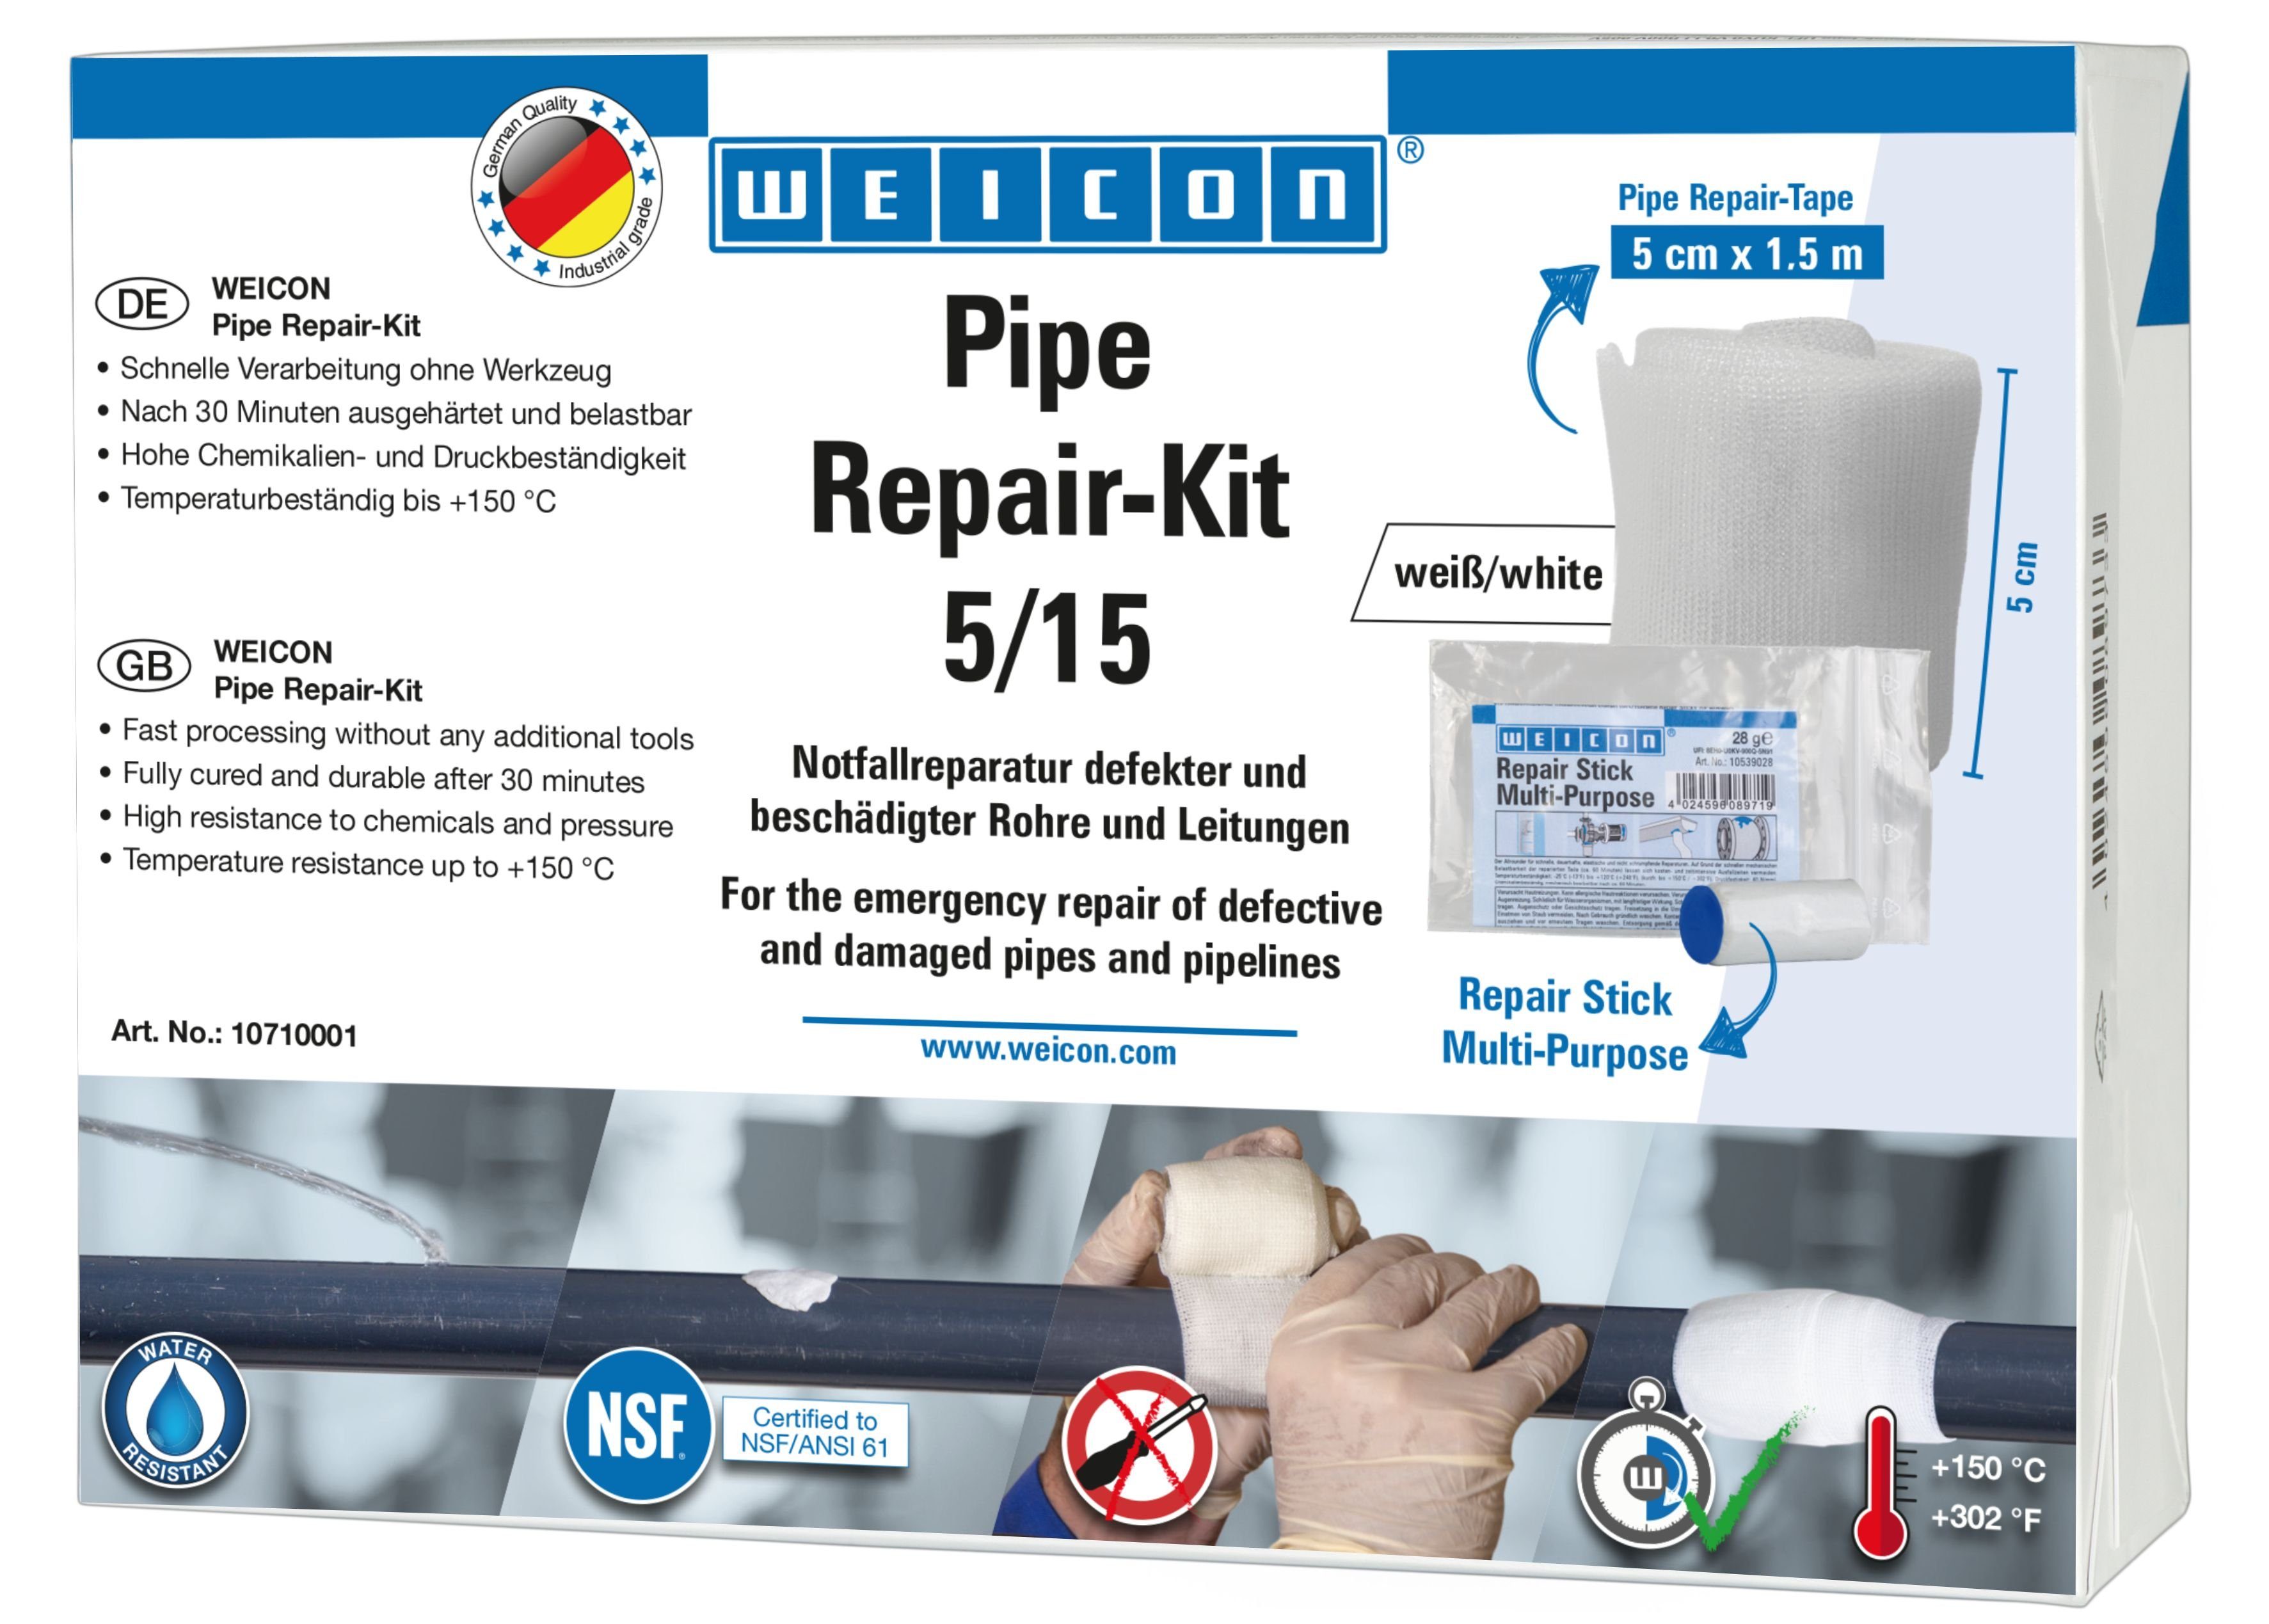 WEICON Reparatur-Set Pipe Repair-Kit, Notfall-Reparatur Leitungen beschädigter Rohre und